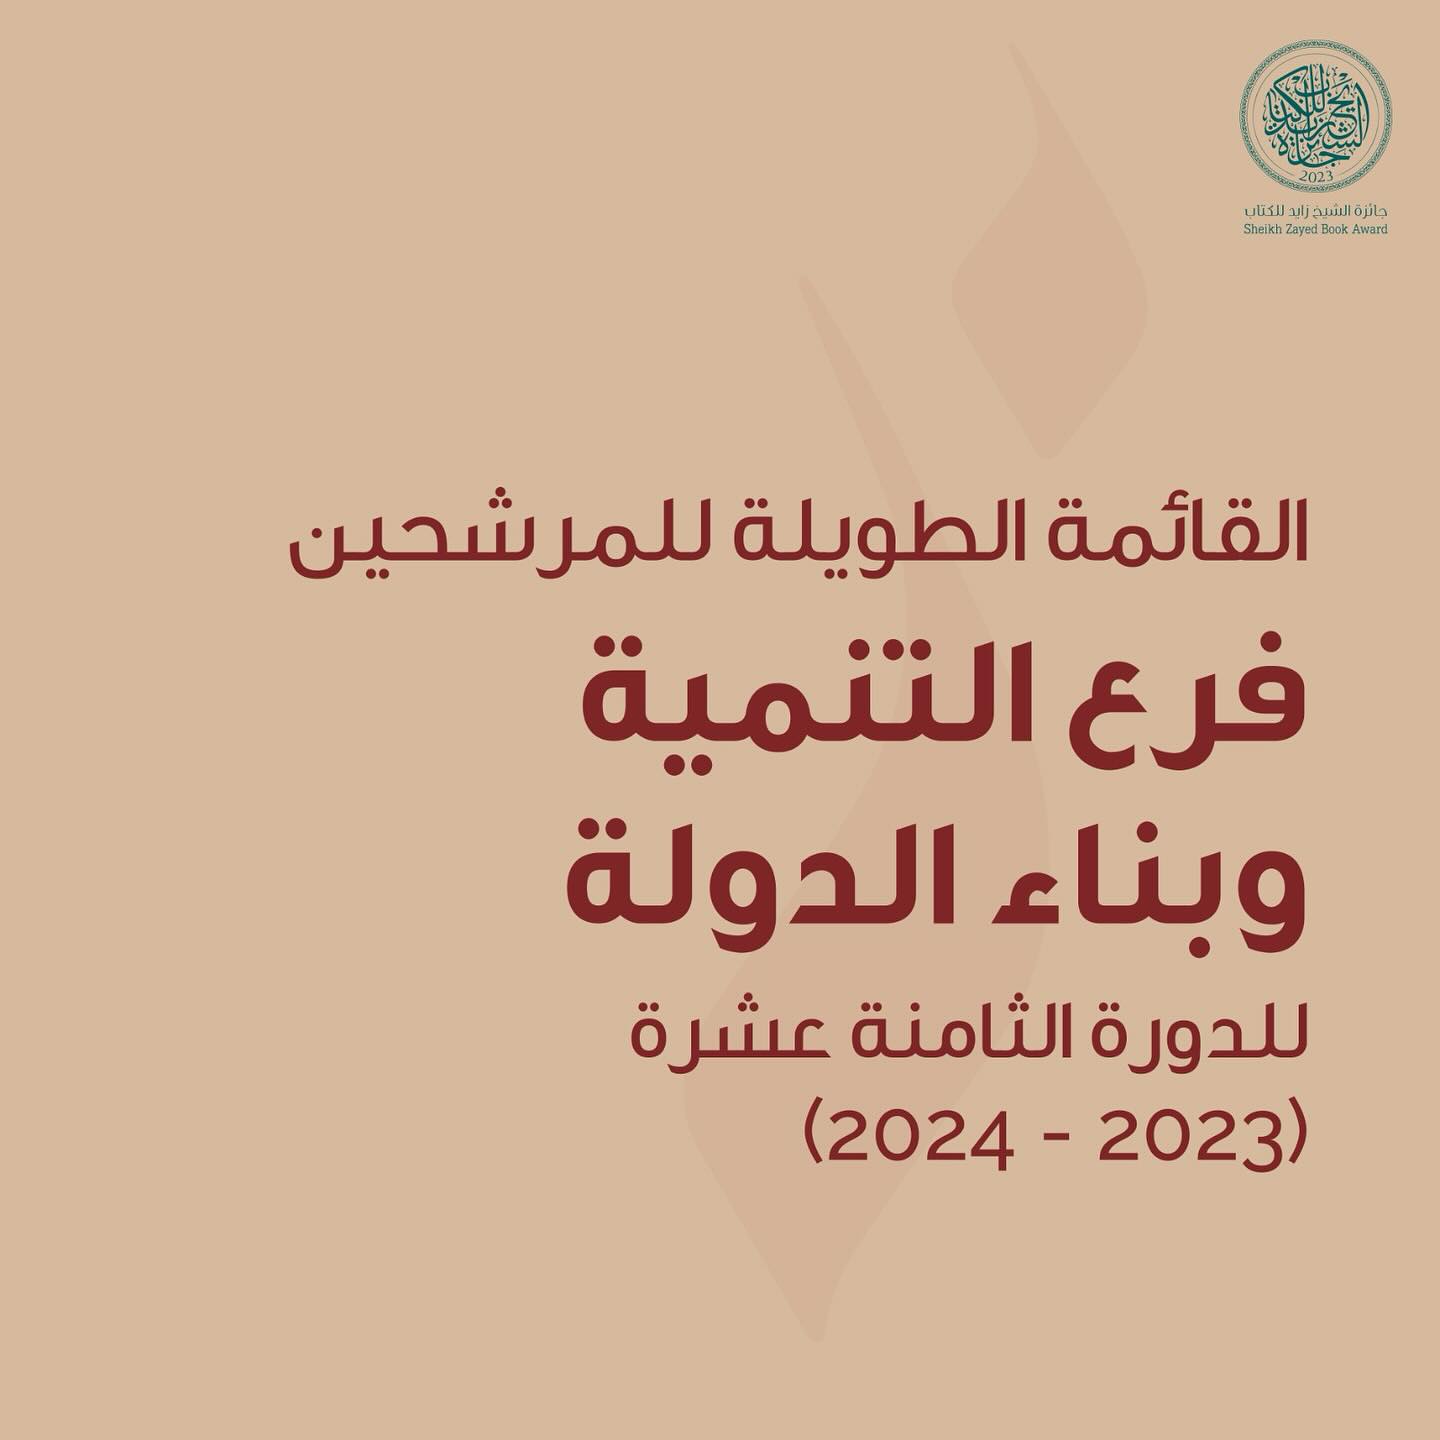 جائزة الشيخ زايد للكتاب فرع التنمية وبناء الدولة 2023